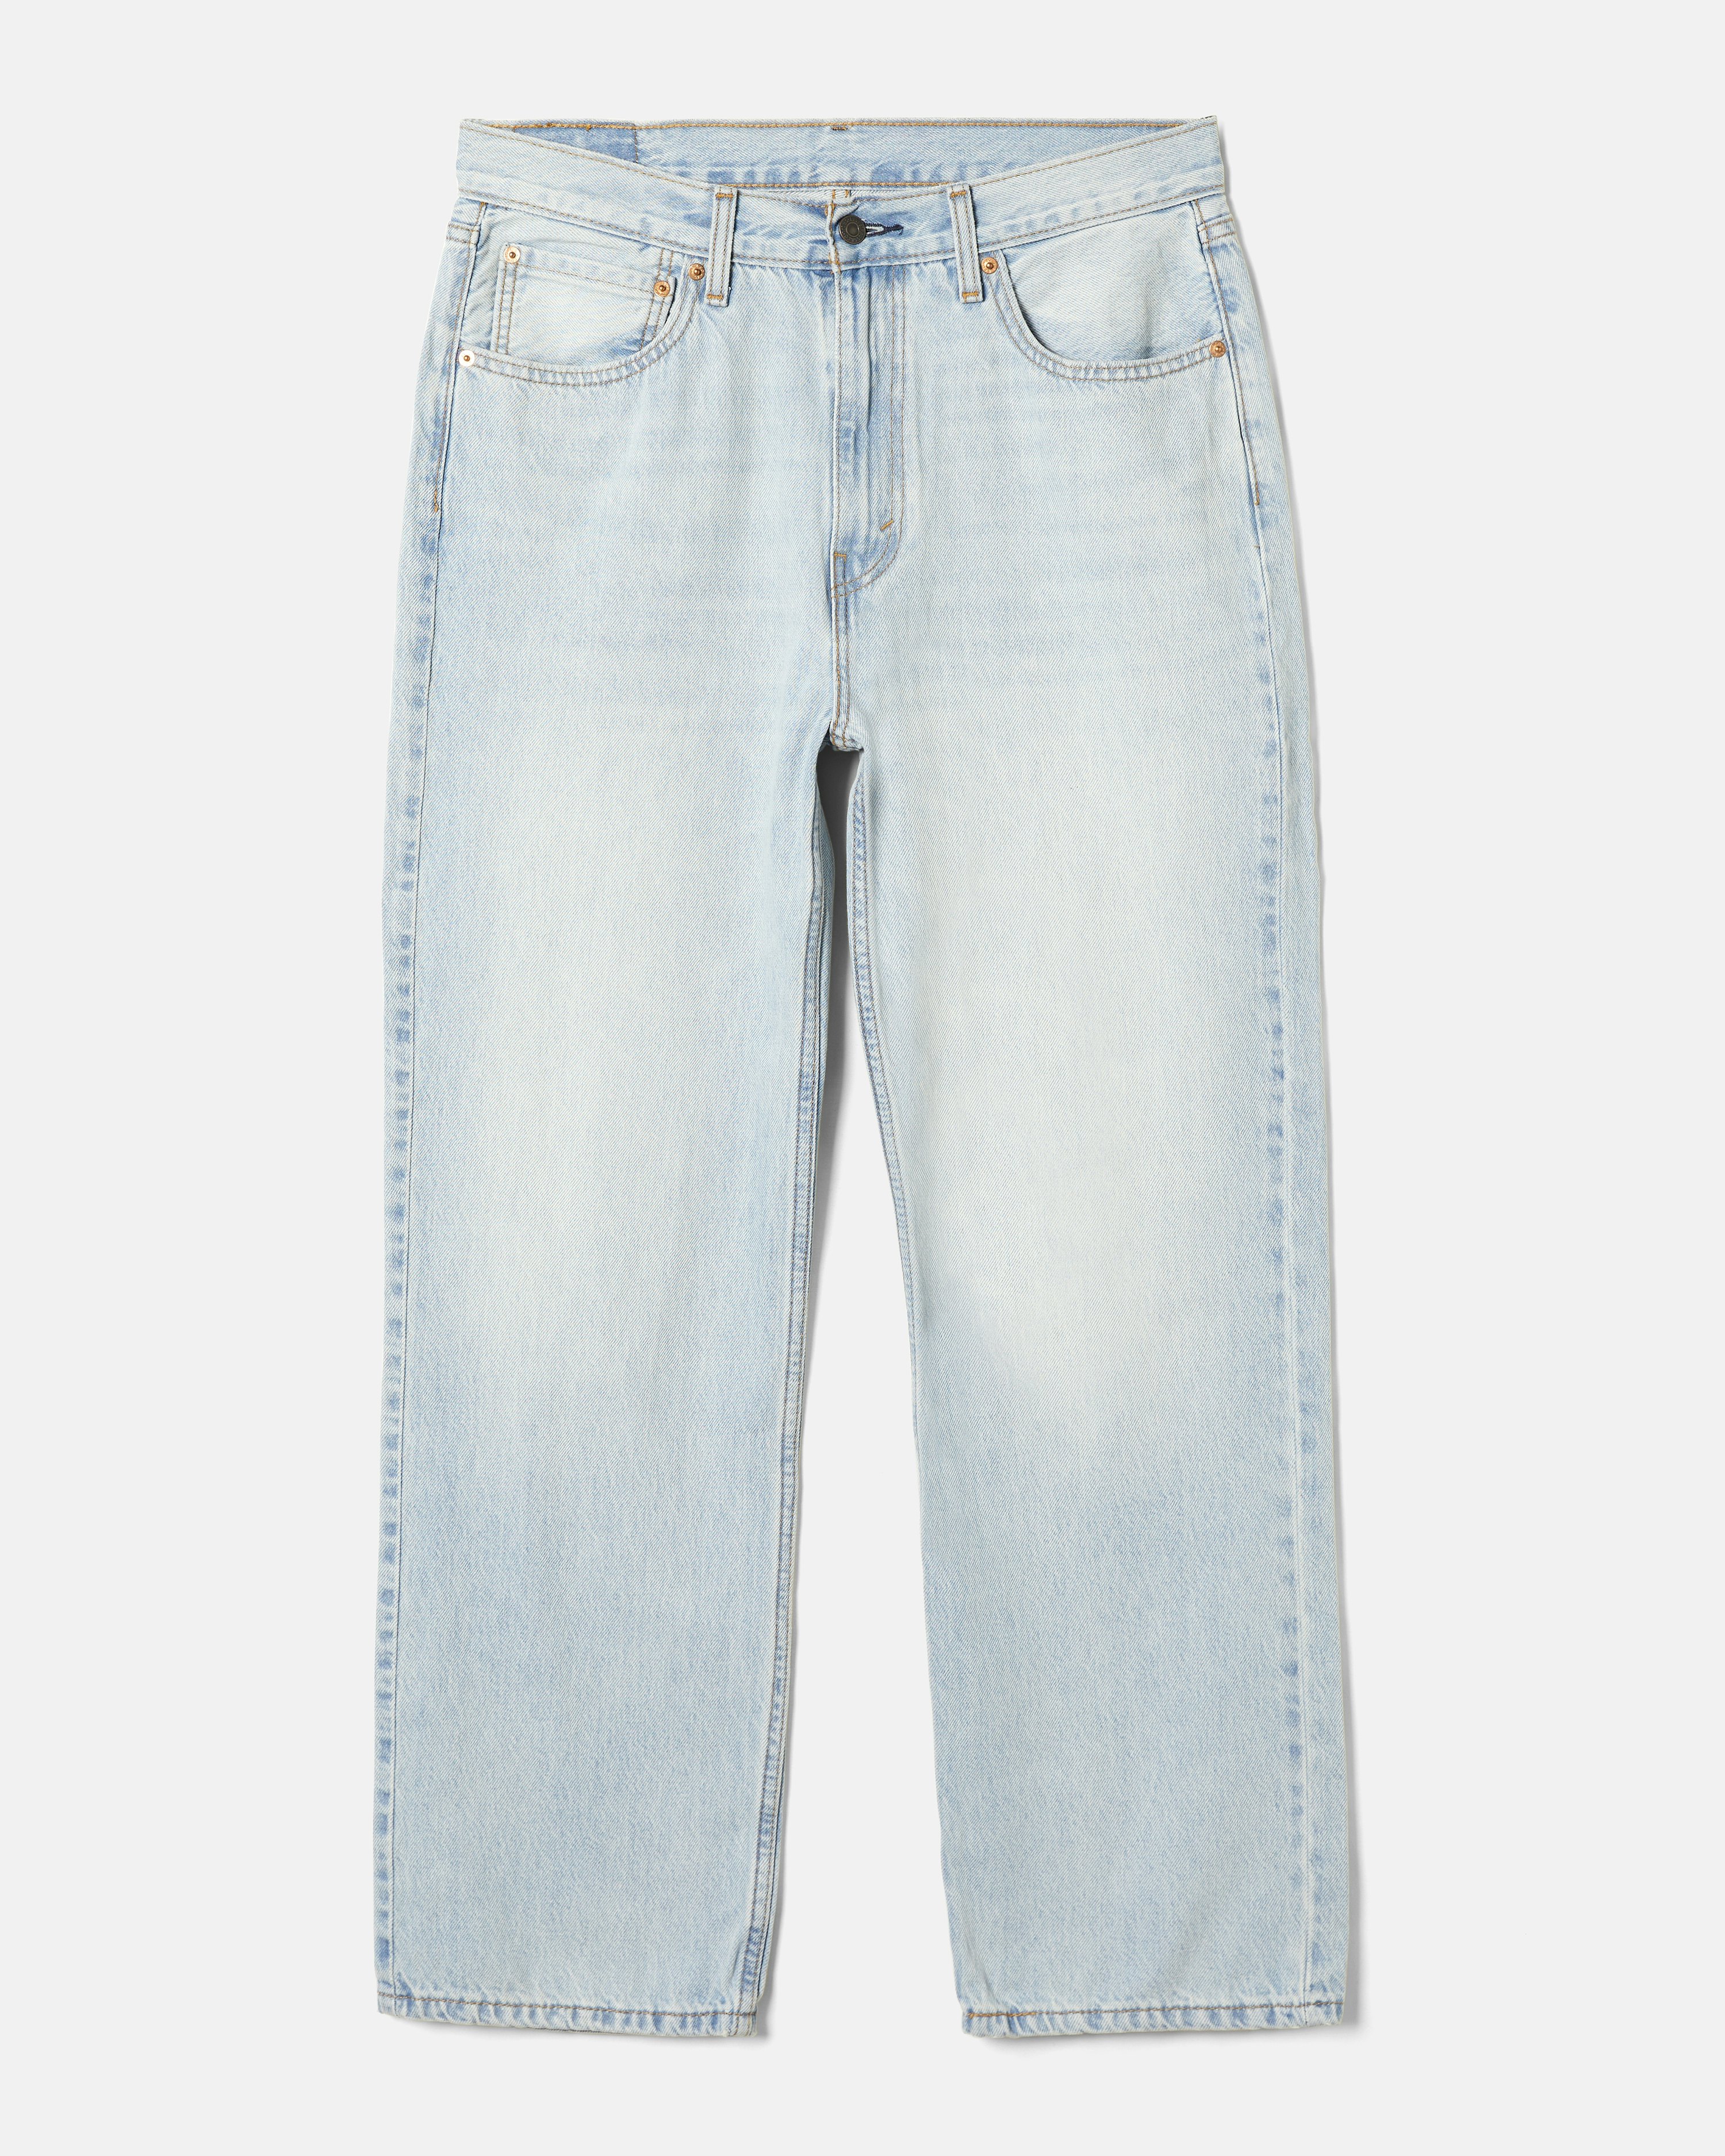 Levi's 97 Loose Straigt Jeans Light blue | Men | Junkyard